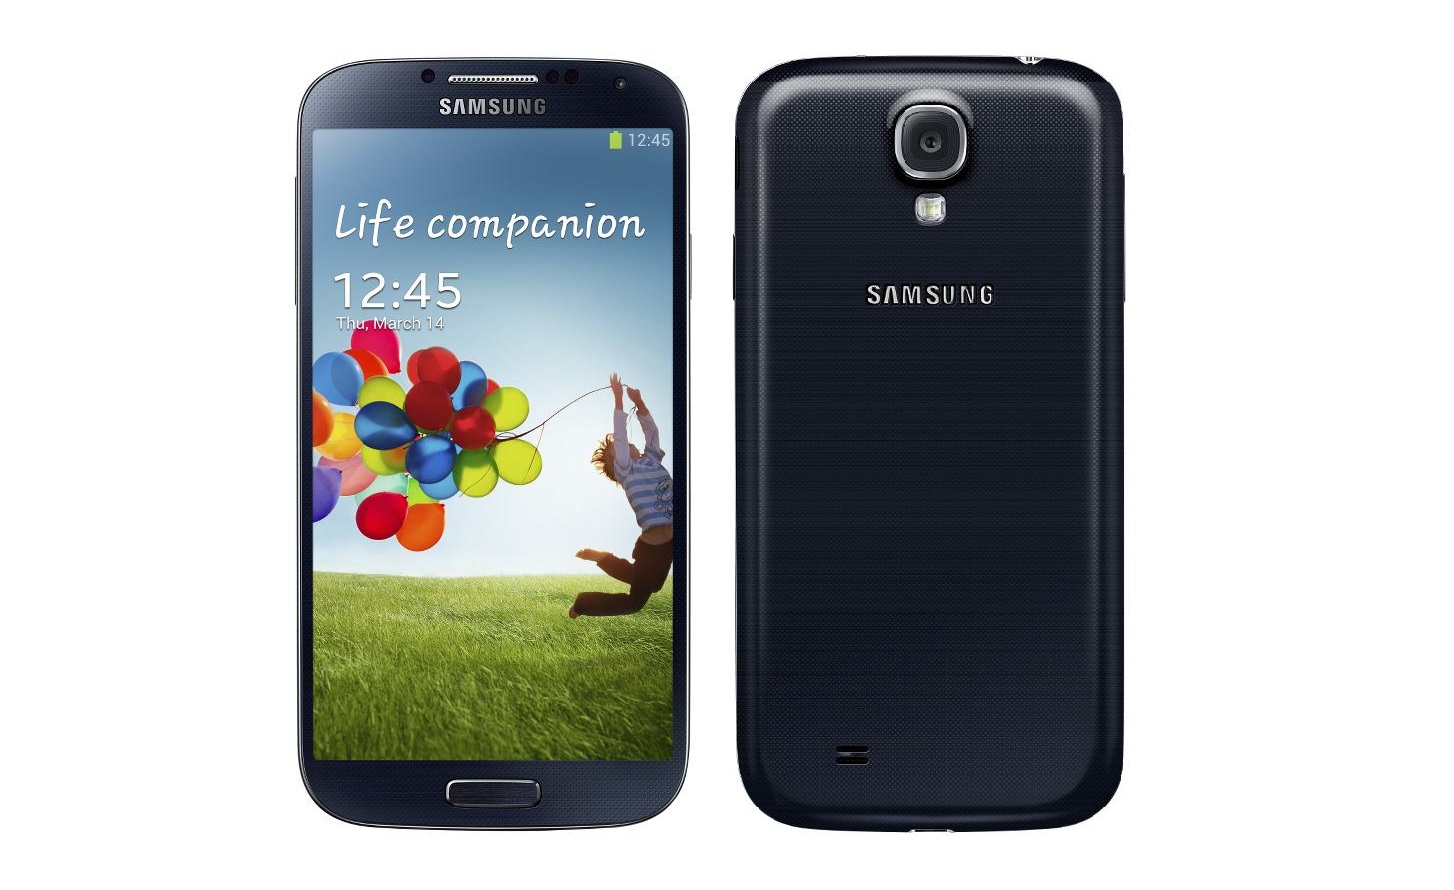 Samsung s 14. Самсунг галакси с4. Самсунг s4 2012. Samsung Galaxy s4 16gb i9500. Samsung gt-i9505.